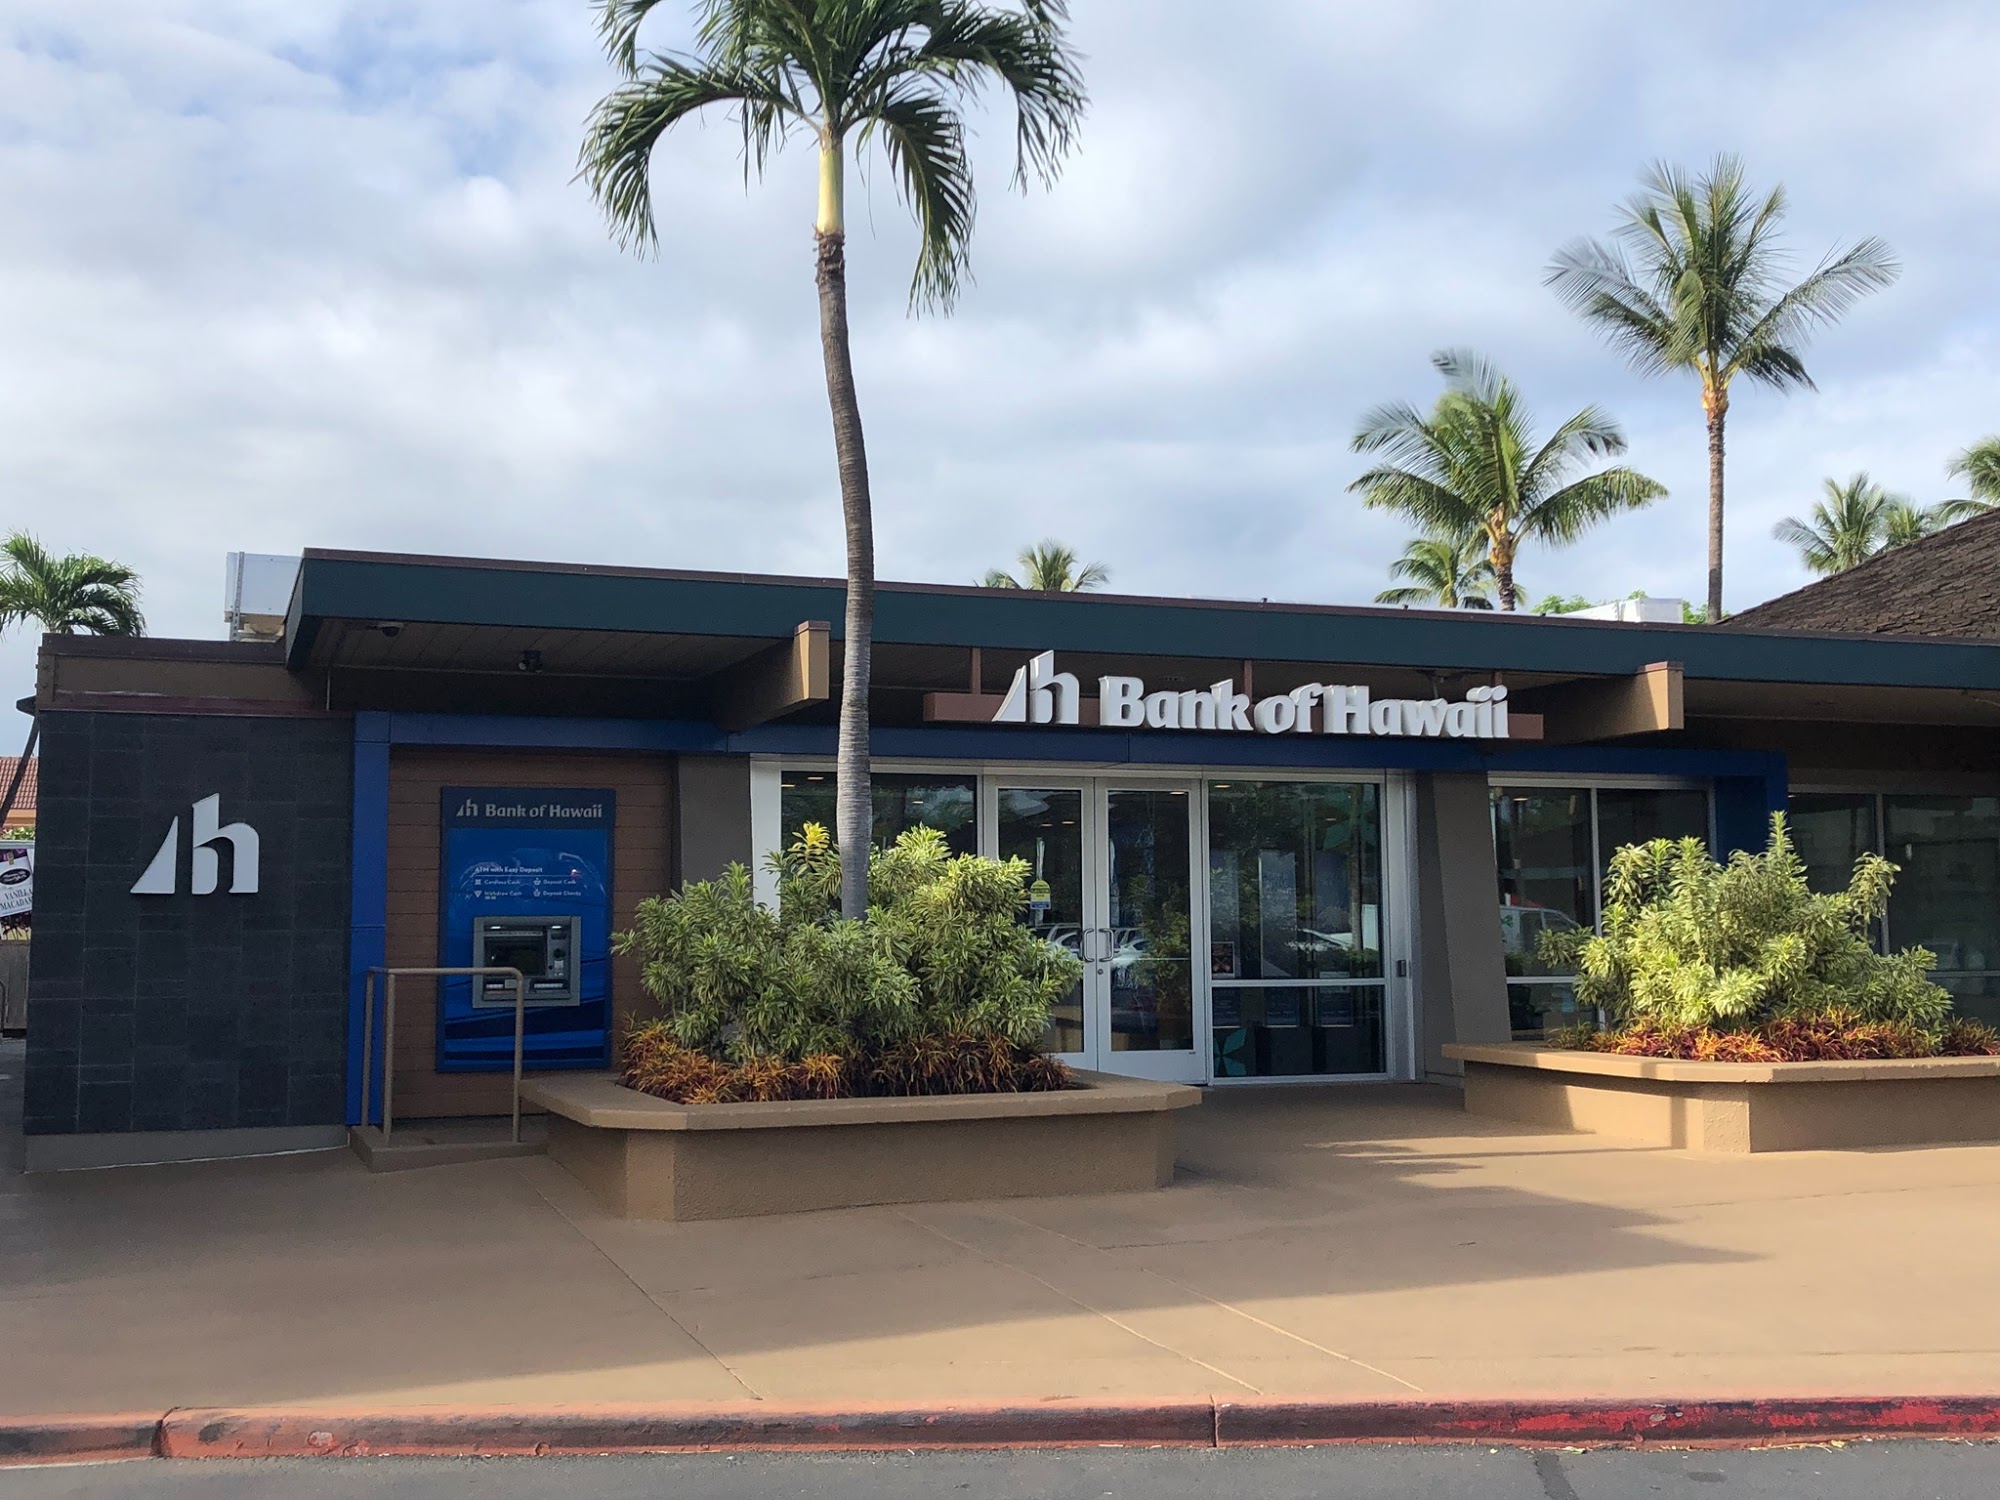 Bank of Hawaii